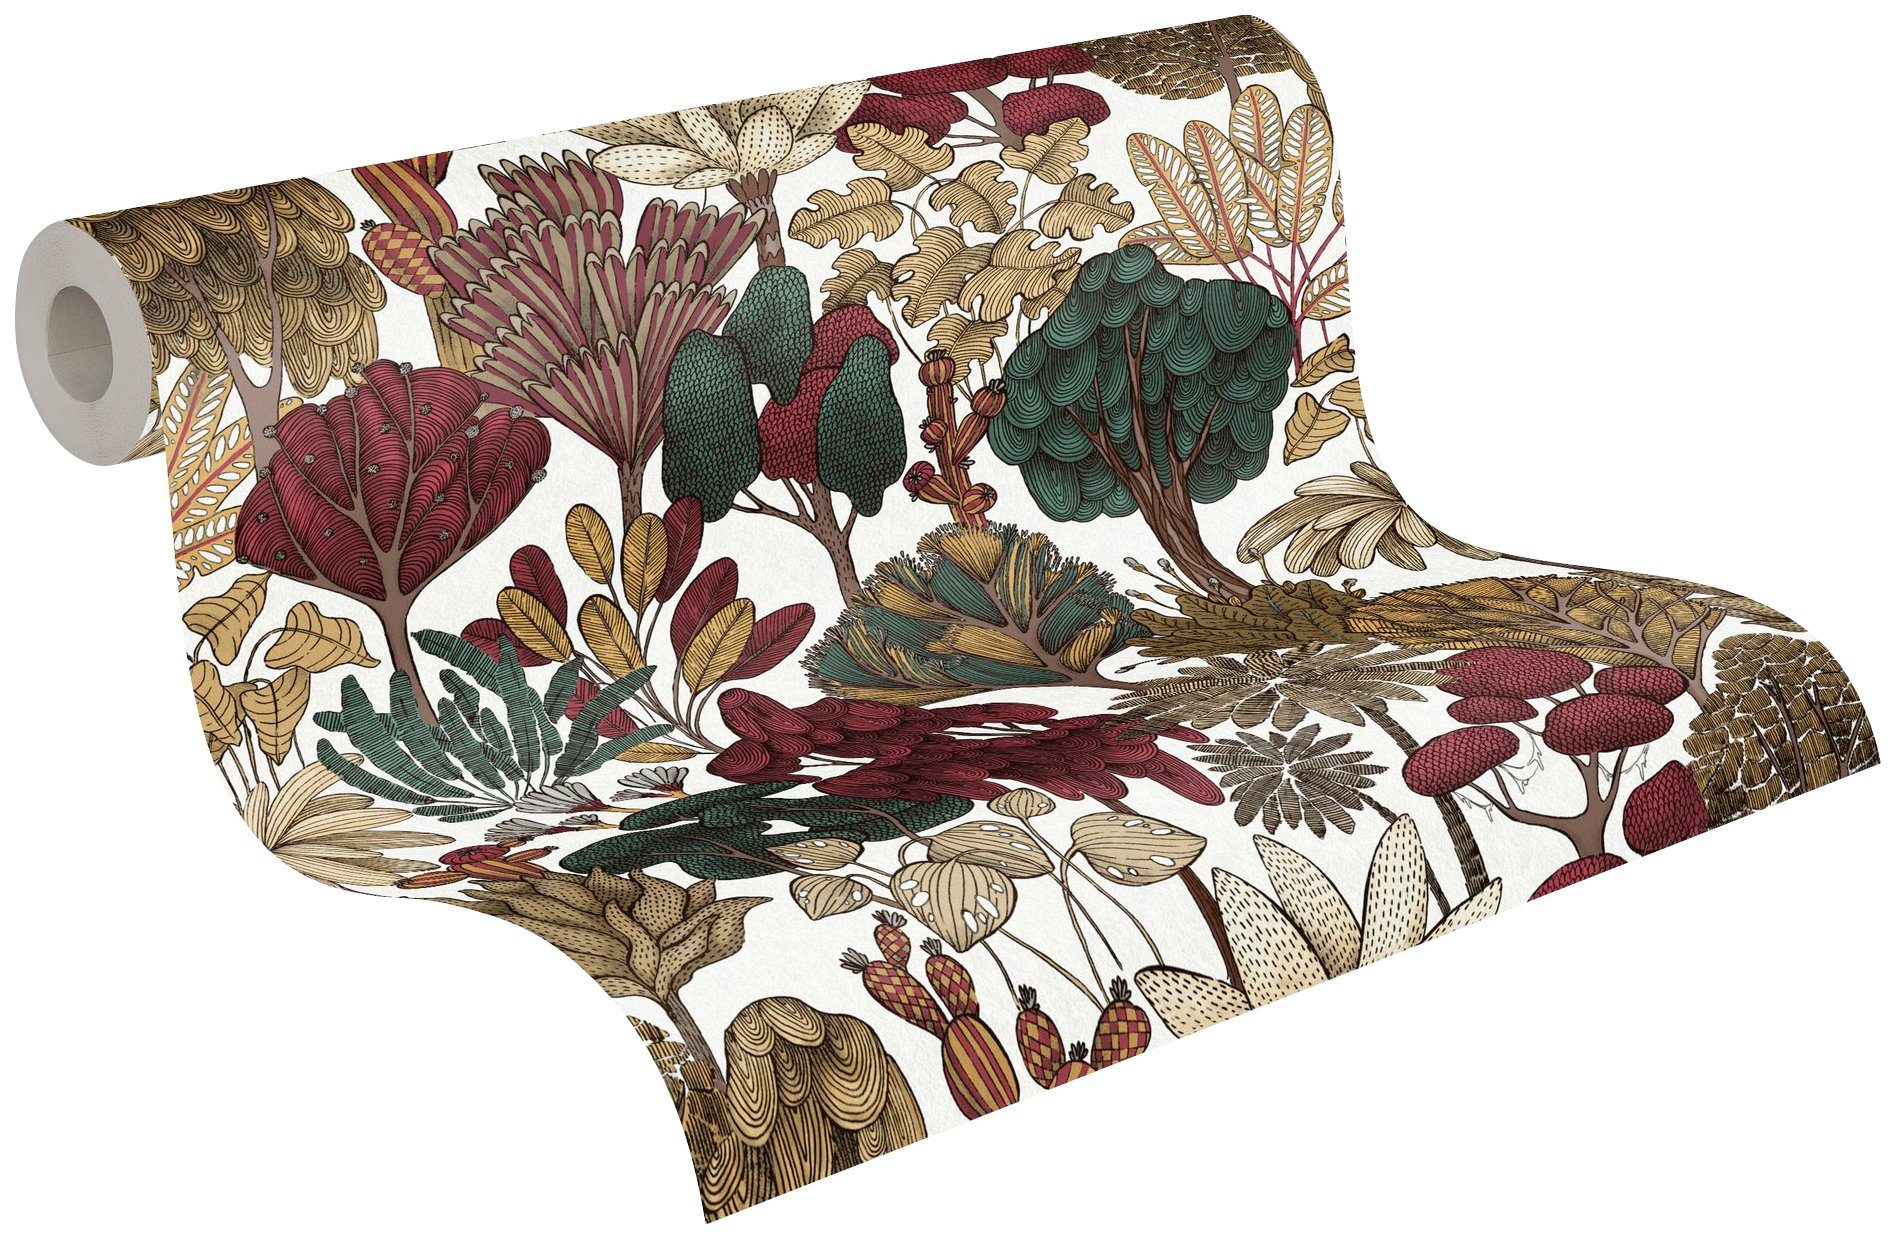 Paper Tapete Vliestapete Dschungel rot/beige/braun A.S. glatt, botanisch, Floral Impression, Architects Création Blumentapete floral,